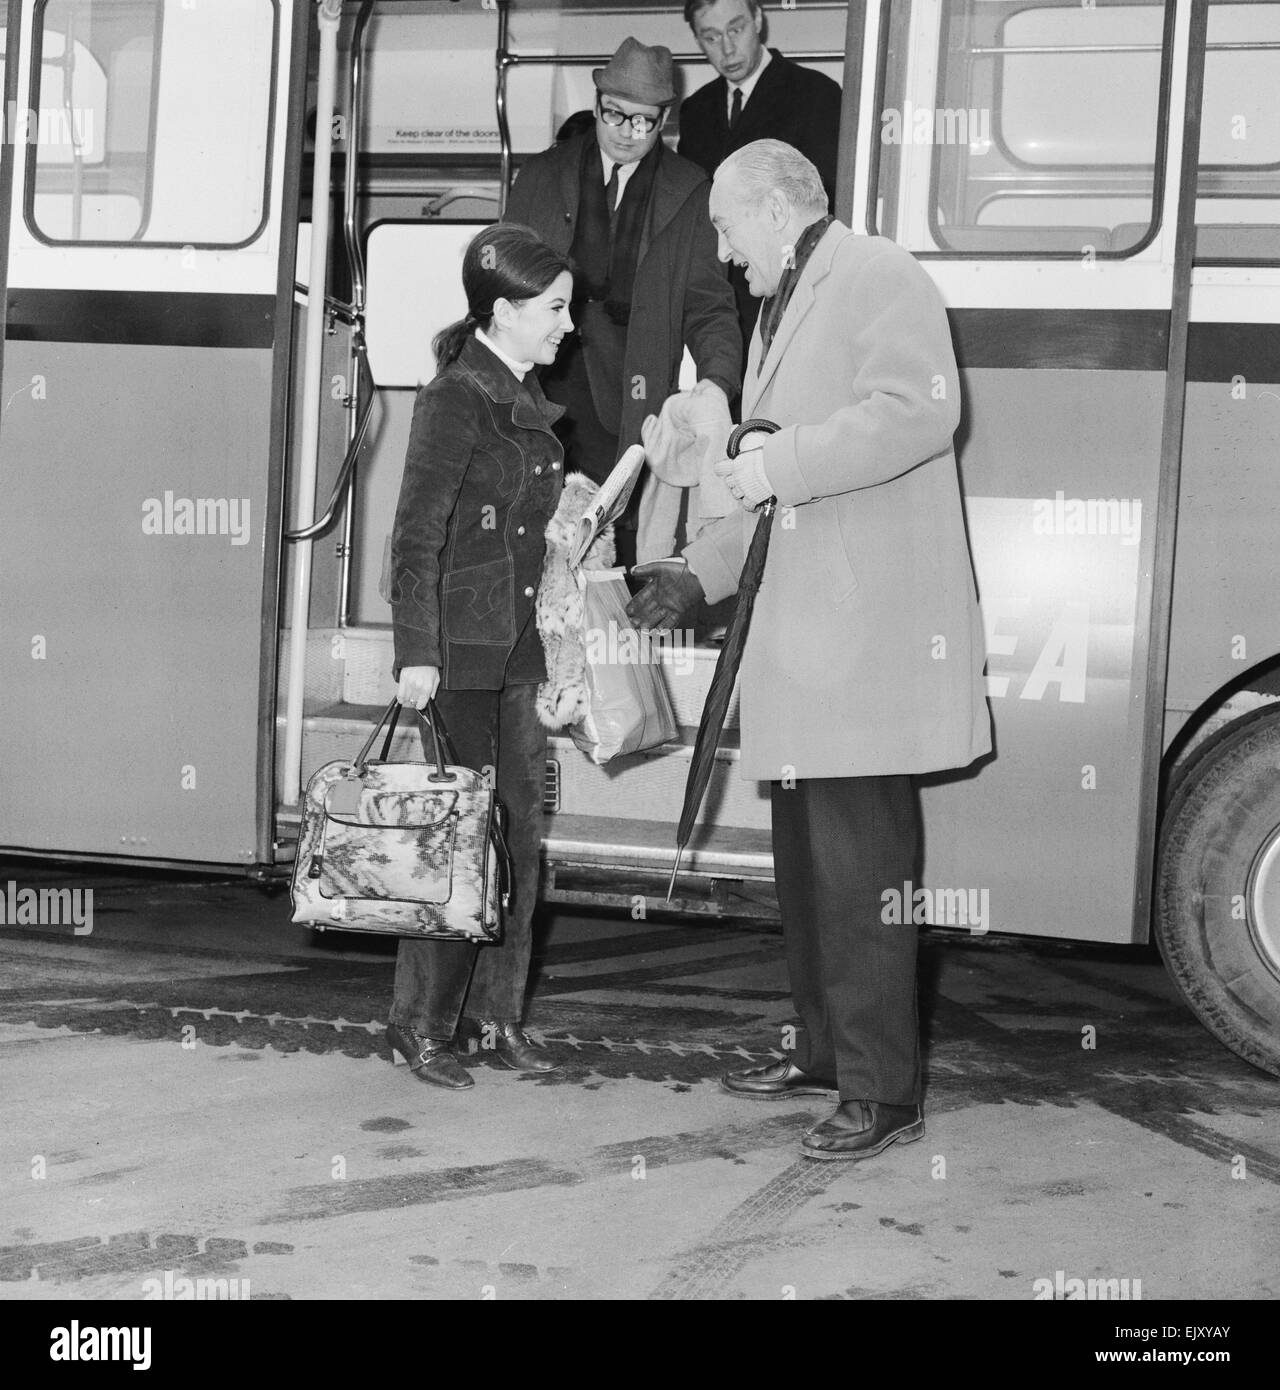 Barbara Parkins, Fernsehen & Film Schauspielerin abgebildet, Ankunft am Flughafen London Heathrow 21. Februar 1969.    Barbara ist auf dem Weg nach Helsinki, zu beginnen die Dreharbeiten zu "The Kremlin Letter", ein Spionage-Thriller auf dem Höhepunkt des Kalten Krieges eingestellt.    Abgebildet mit dem Schauspieler George Sanders, dürfte die Überschrift für den gleichen Film. Es ist das erste Mal trafen sie haben durch die Fotografen eingeführt wurde. Stockfoto